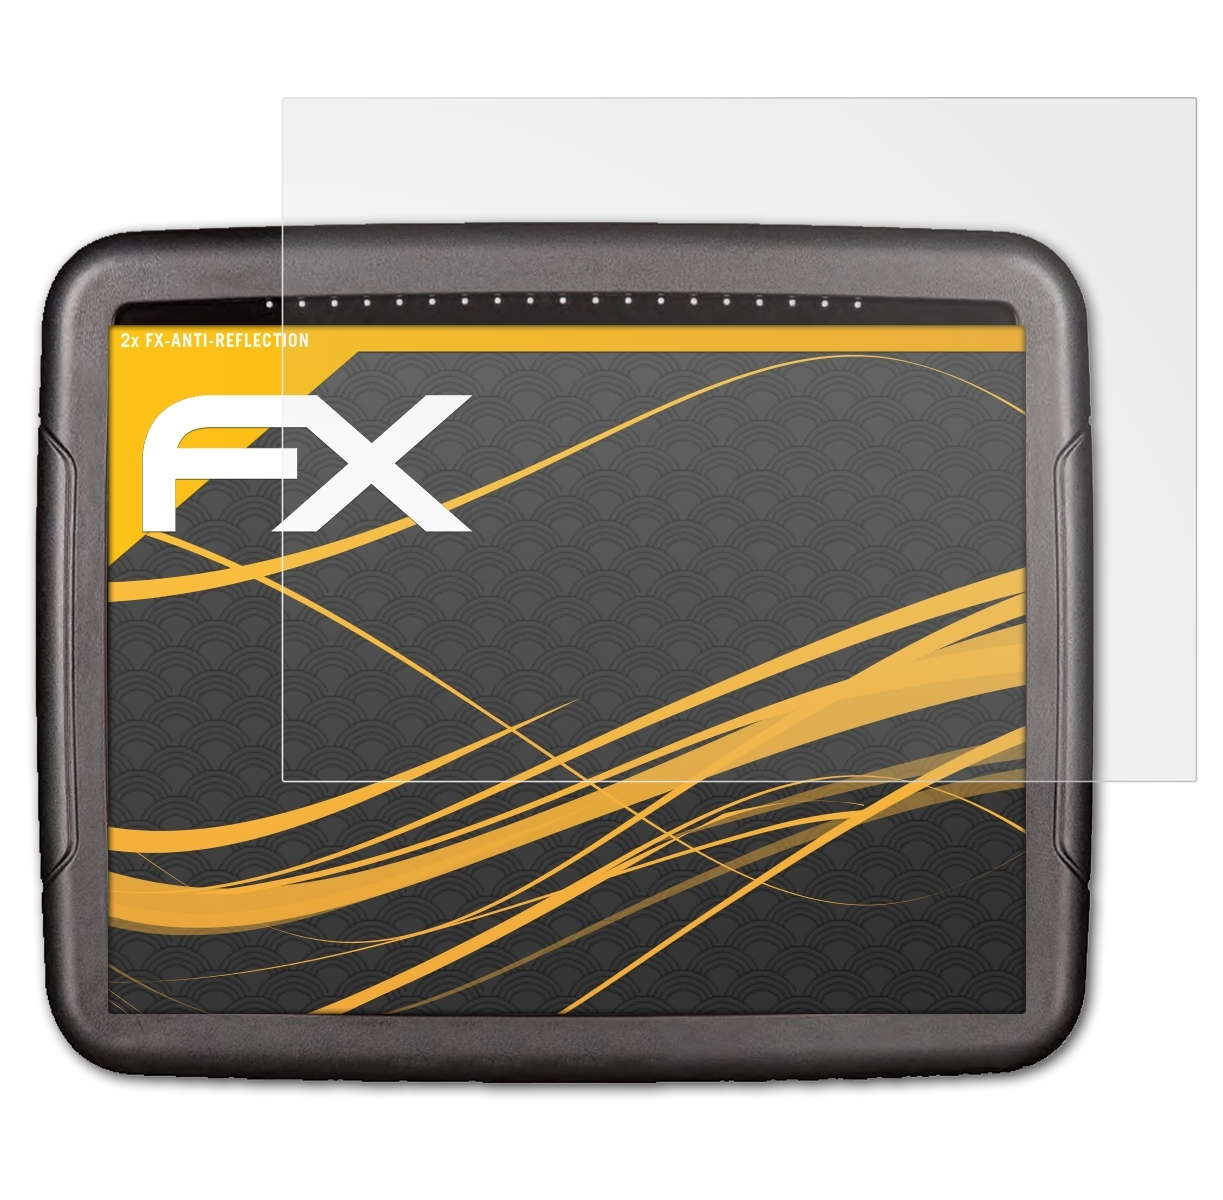 ATFOLIX 2x FX-Antireflex Displayschutz(für Topcon X35)